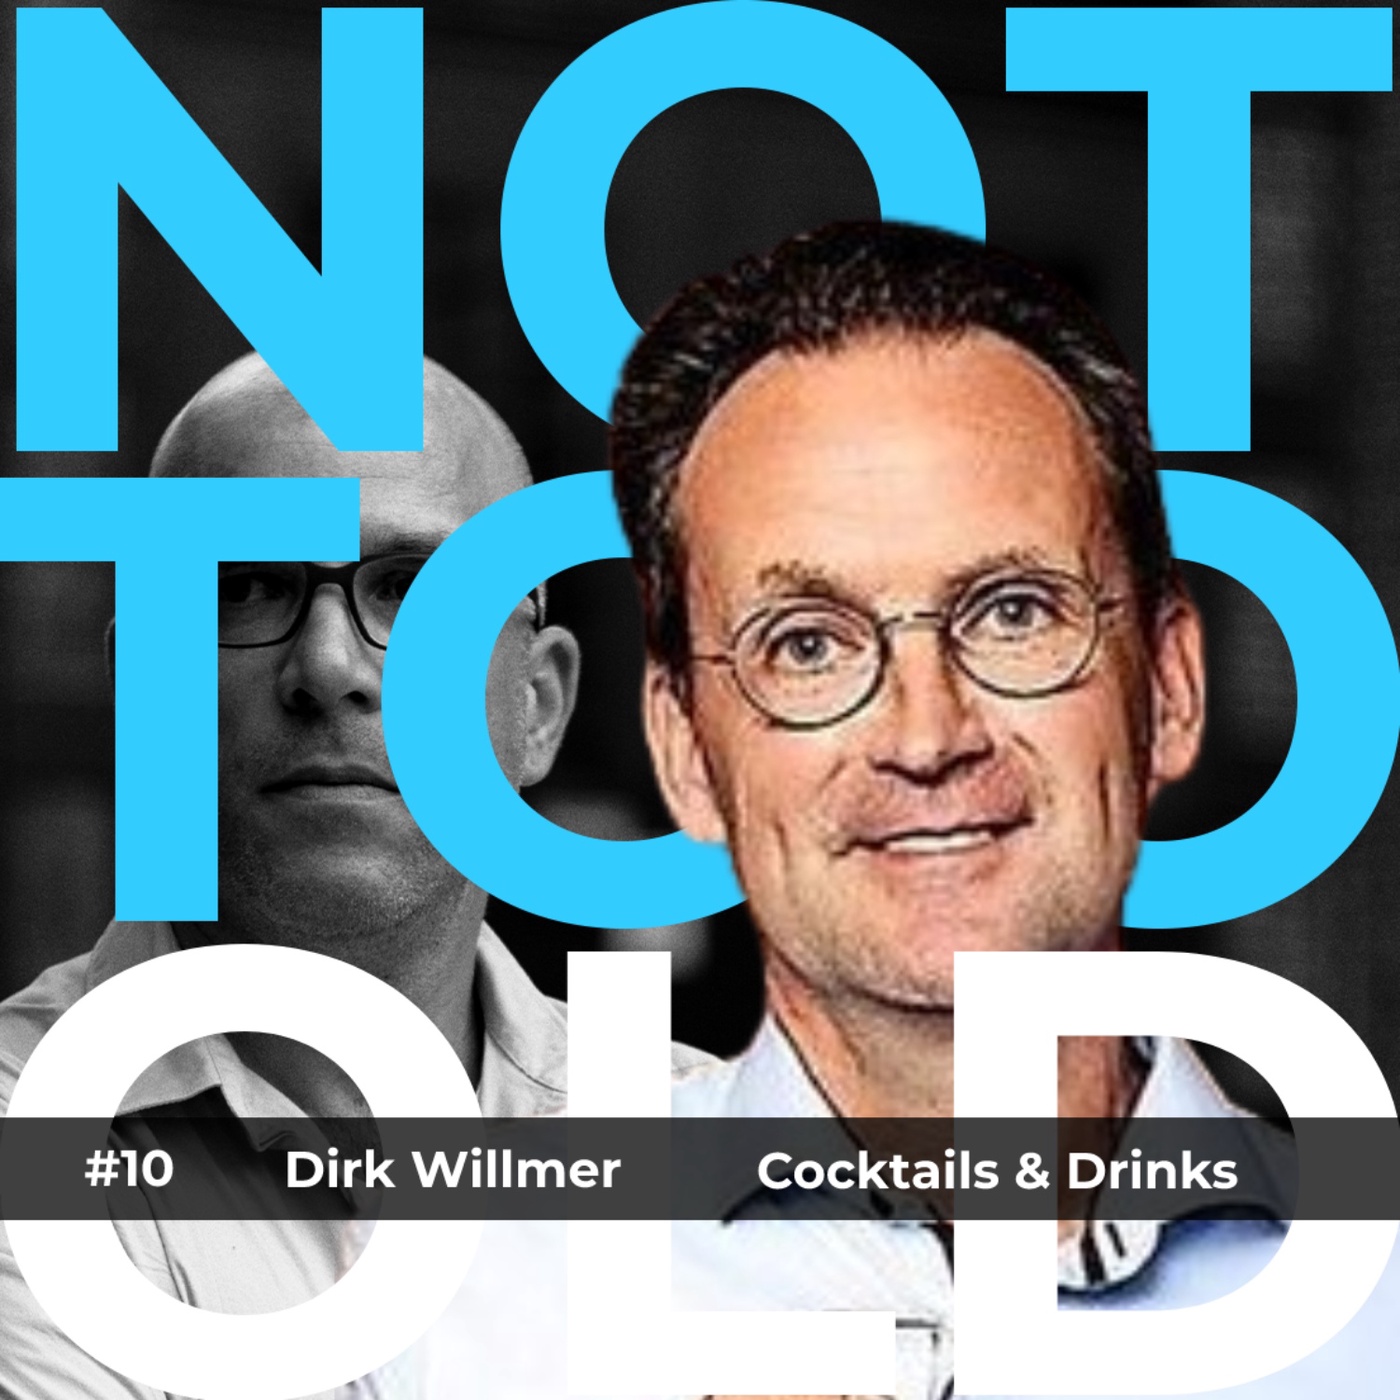 #10 Cocktails - Dirk Willmer